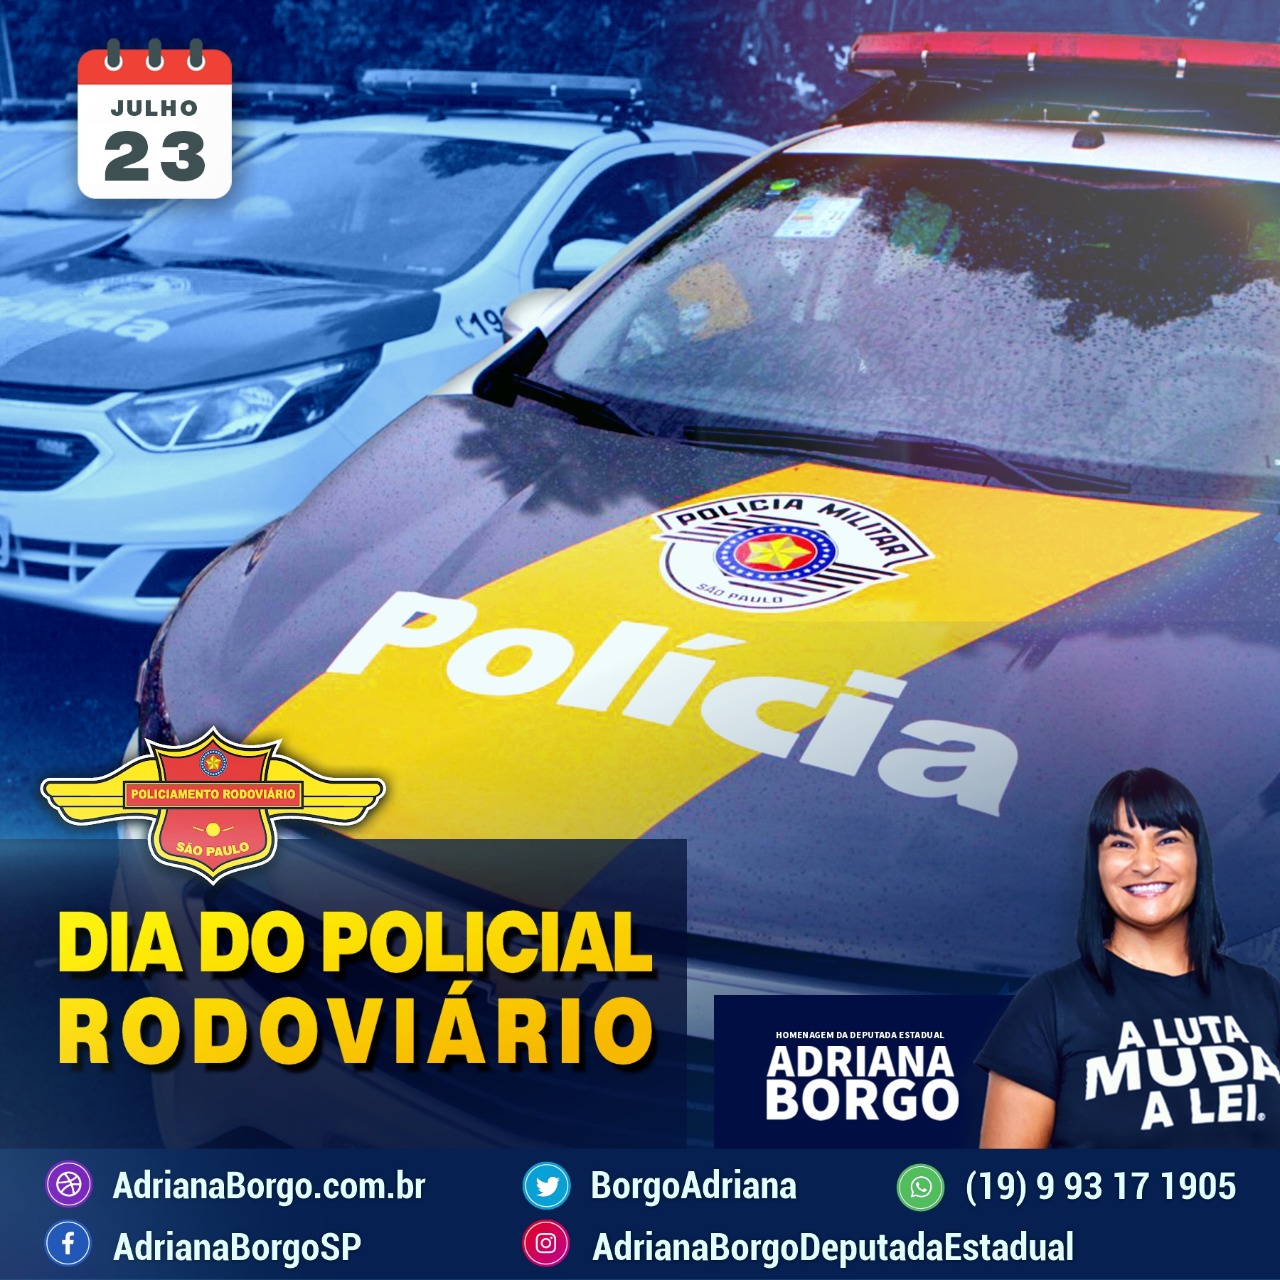 Adriana Borgo - Dia do Policial Rodoviario 2020